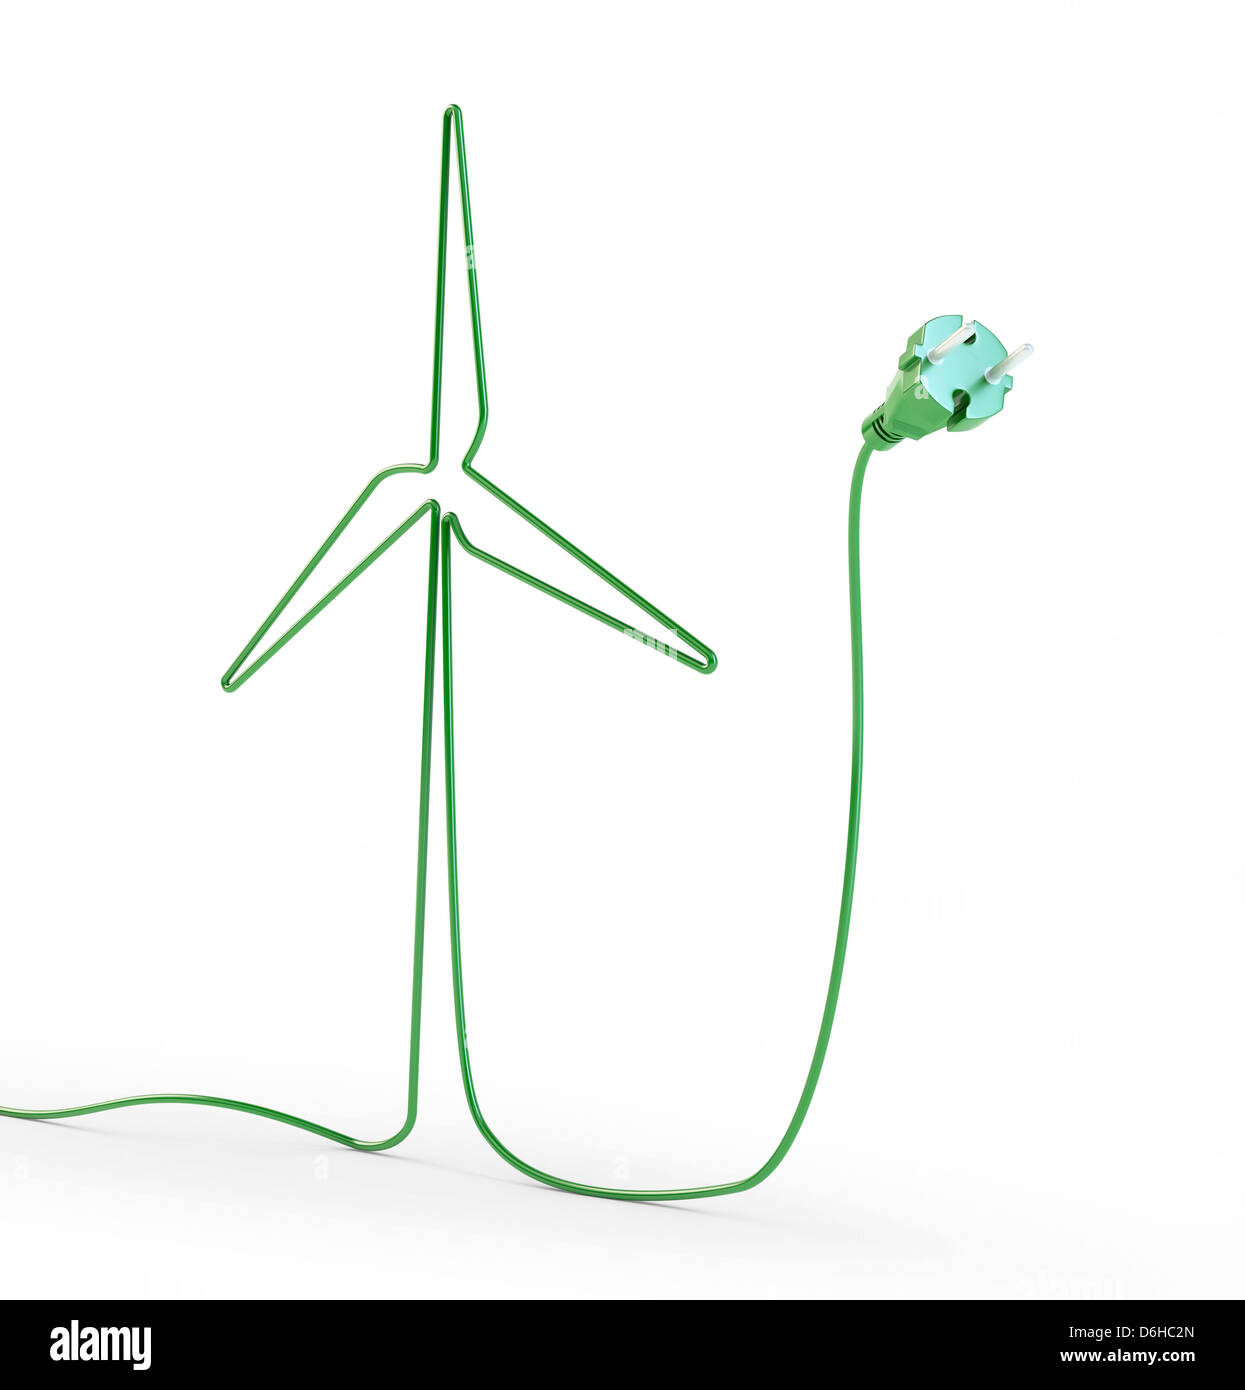 Green energy, conceptual artwork Stock Photo